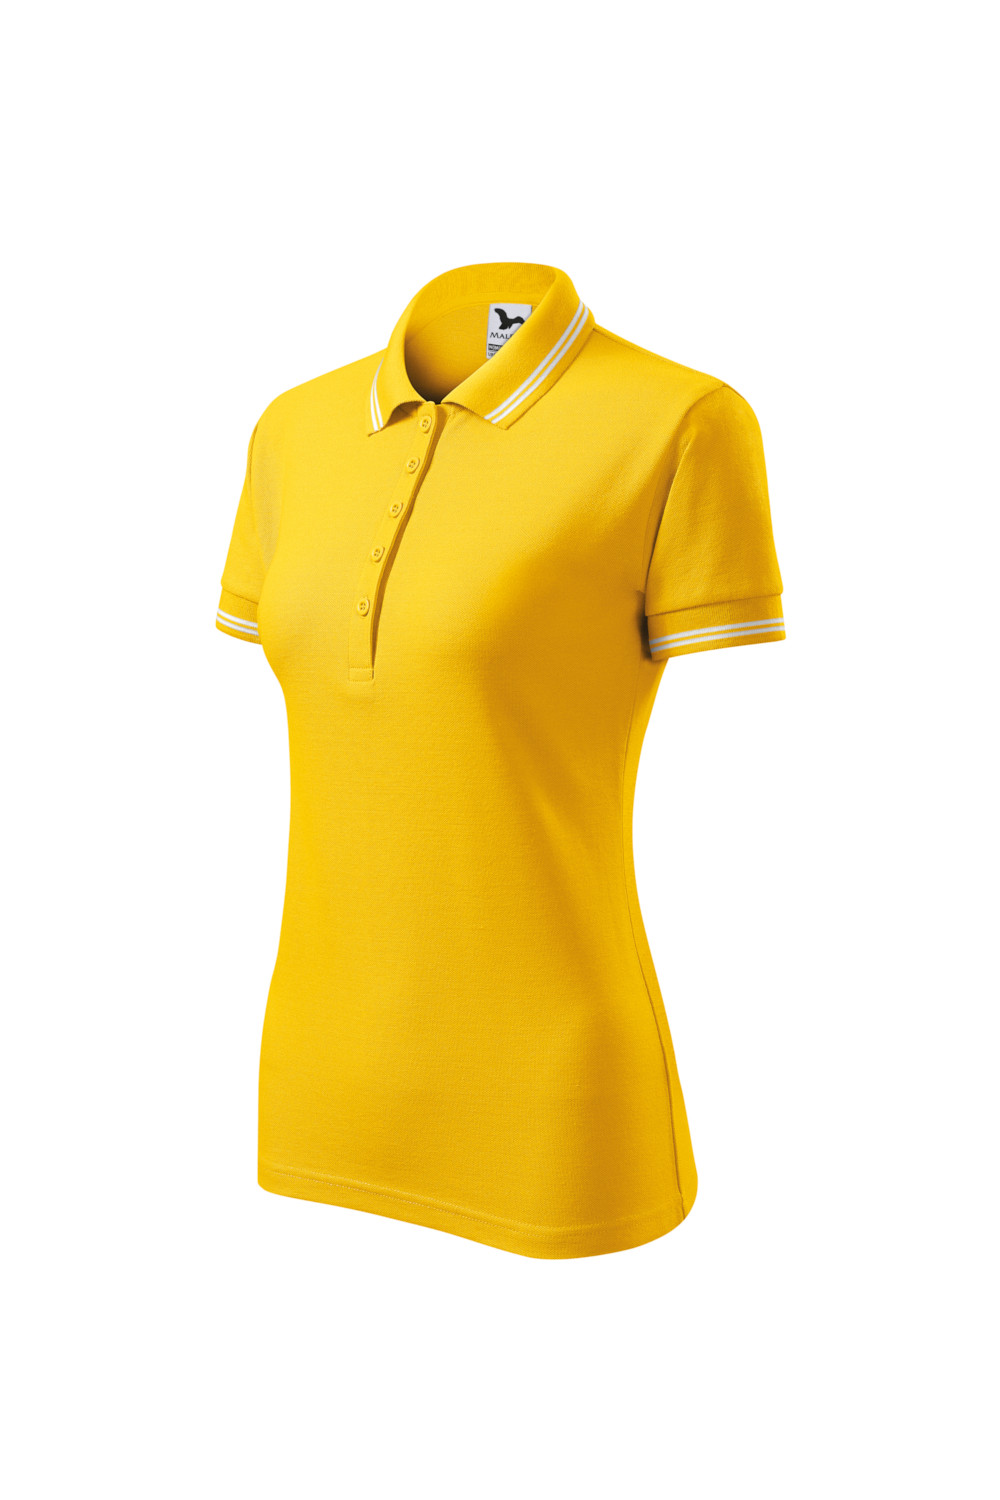 Koszulka Polo damska 65% bawełna 35% poliester URBAN 220 polo żółty